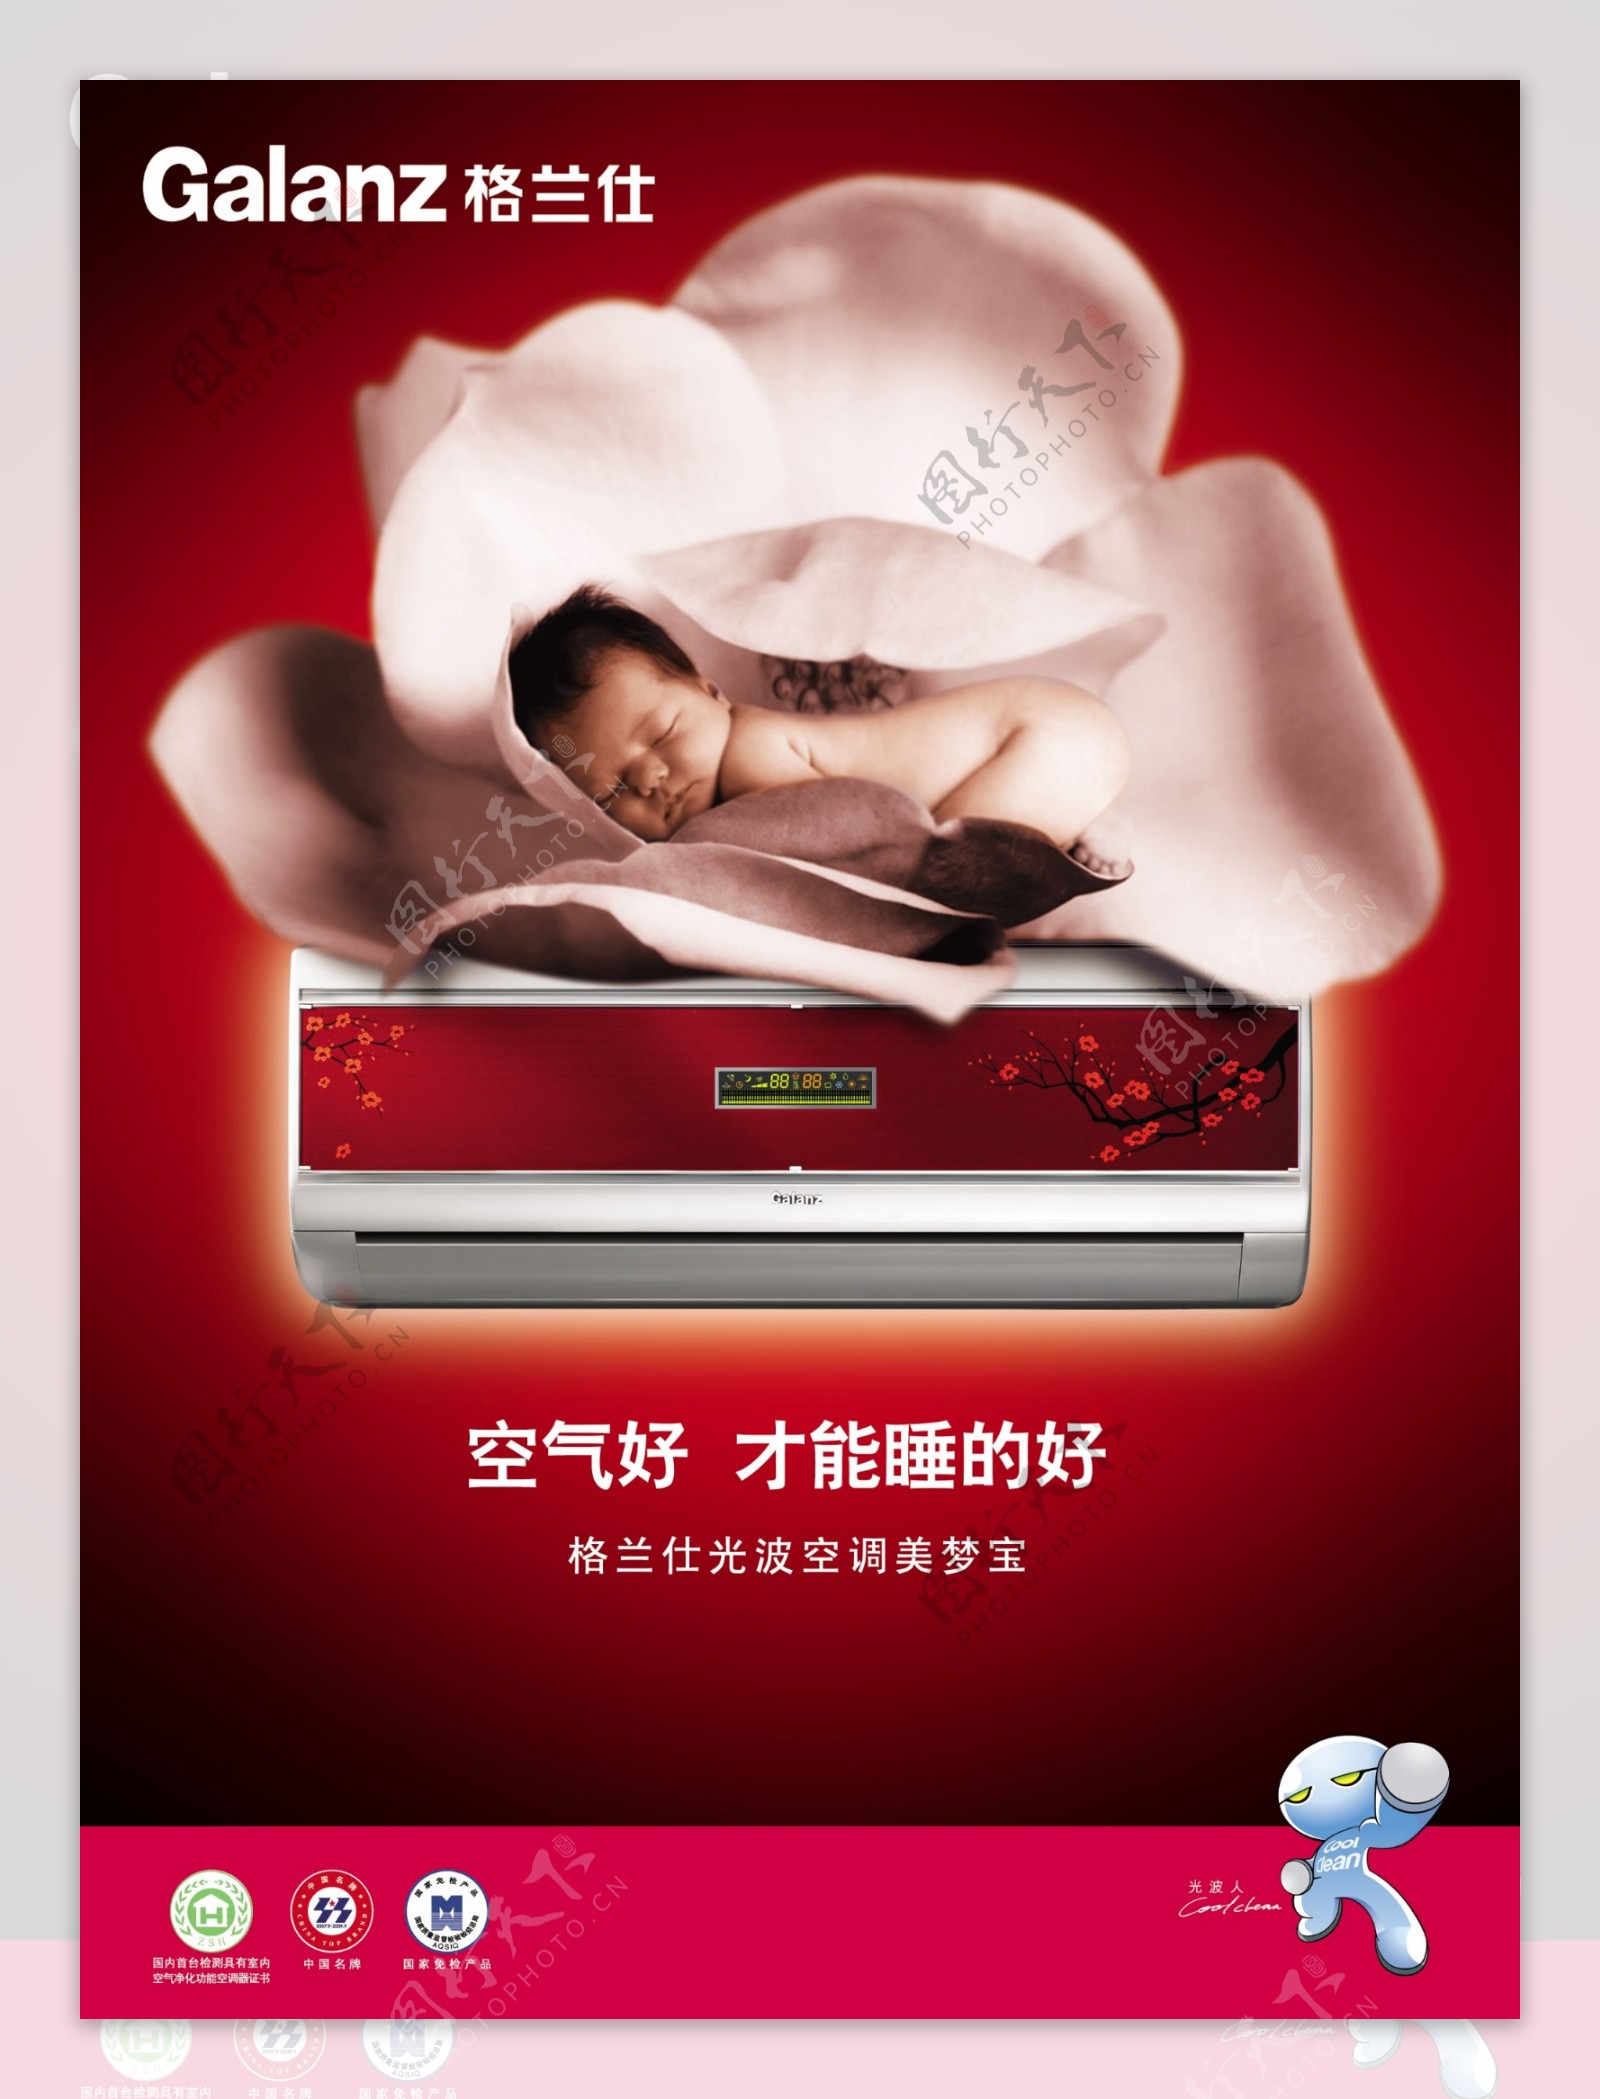 格兰仕空调生活电器类广告设计海报